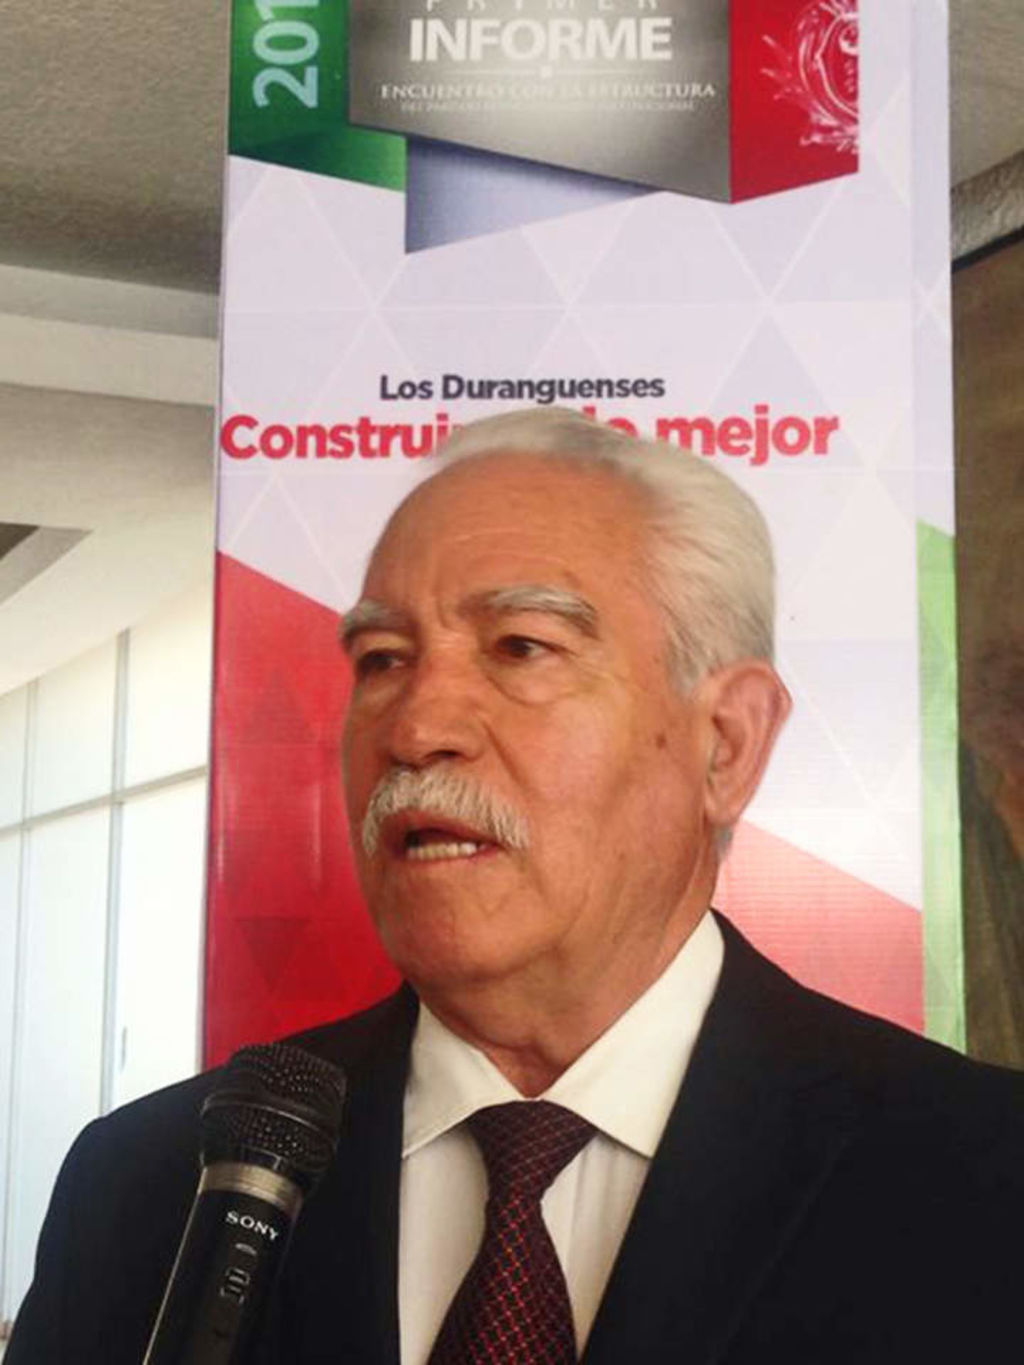 El exgobernador Maximiliano Silerio Esparza dijo que es un proceso normal en la vida democrática de los pueblos y consideró legítimo que haya corrientes al interior de los partidos ya que ello obedece a la pluralidad. (ARCHIVO)
